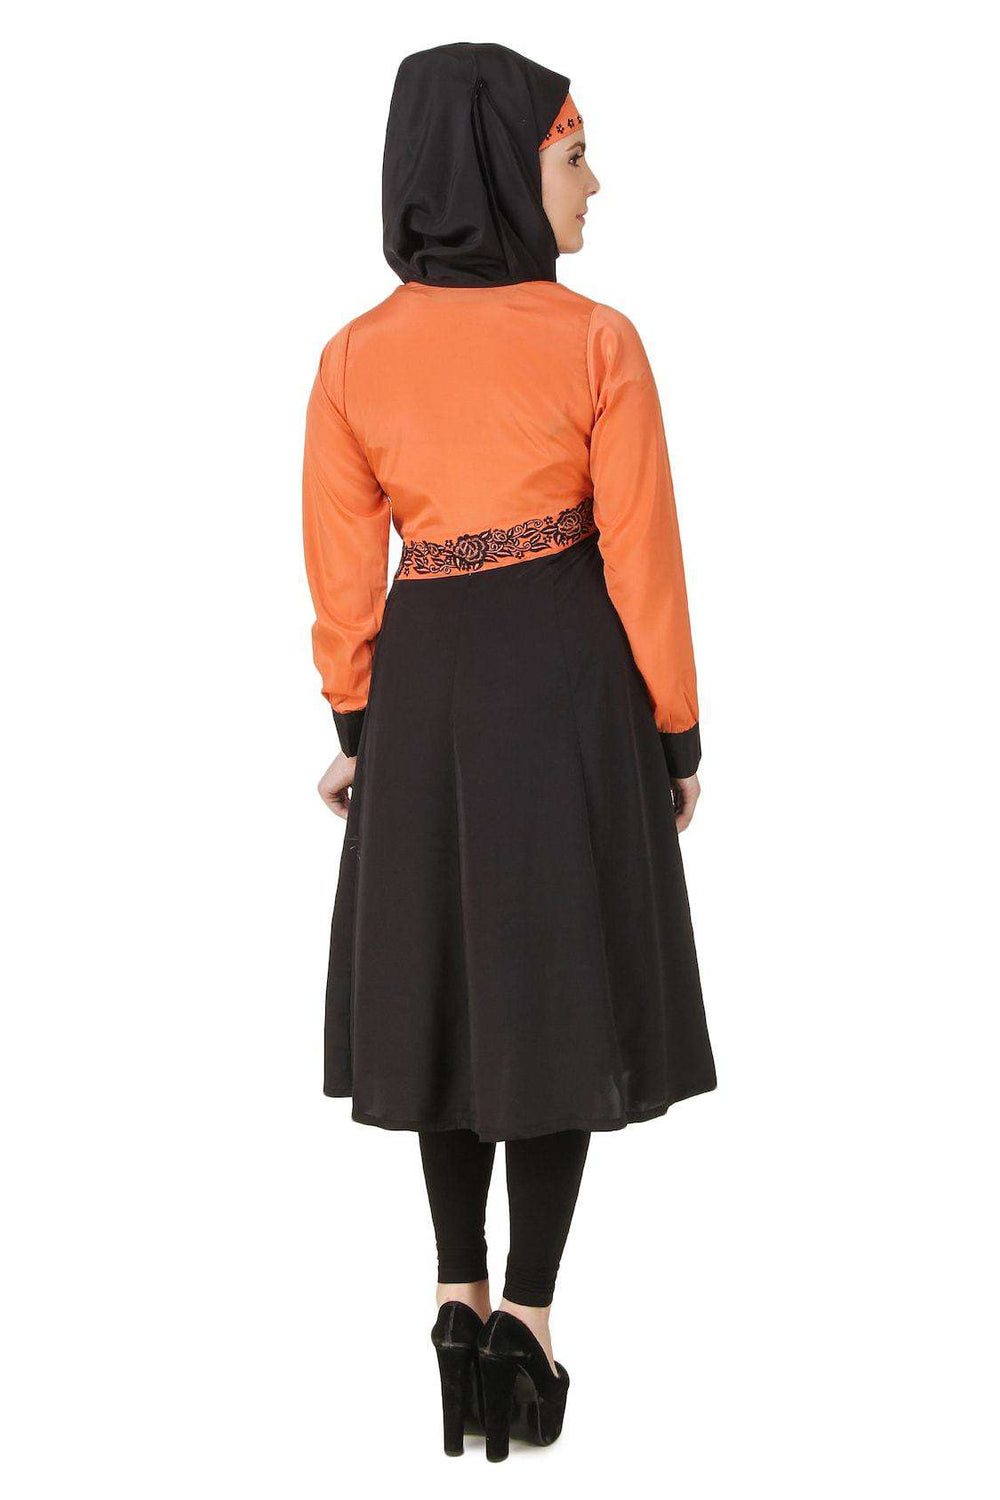 Barika Black & Orange Crepe Short Abaya Back